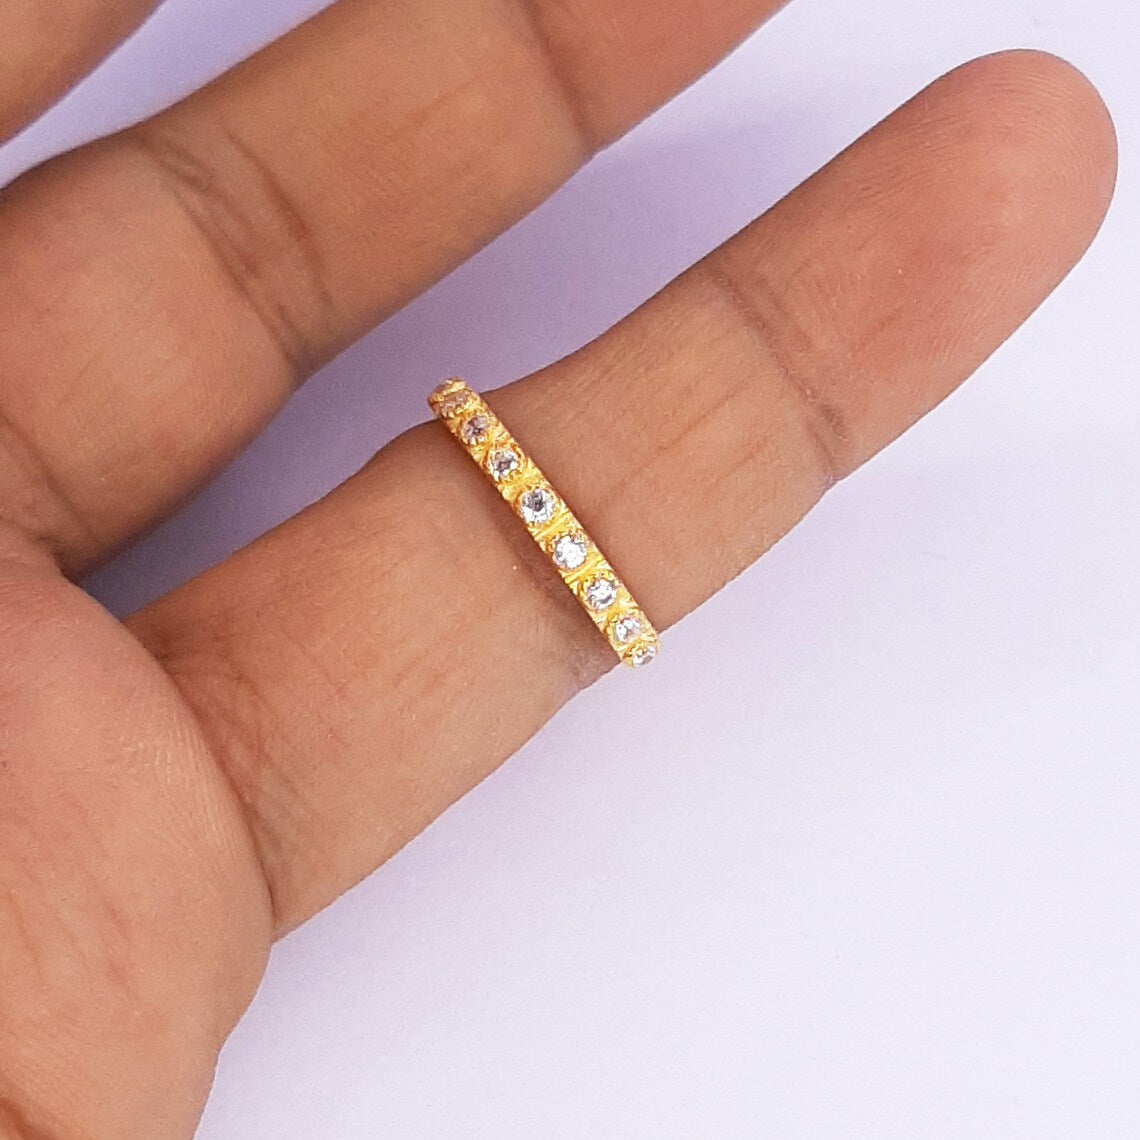 Zirconia minimalist gold ring